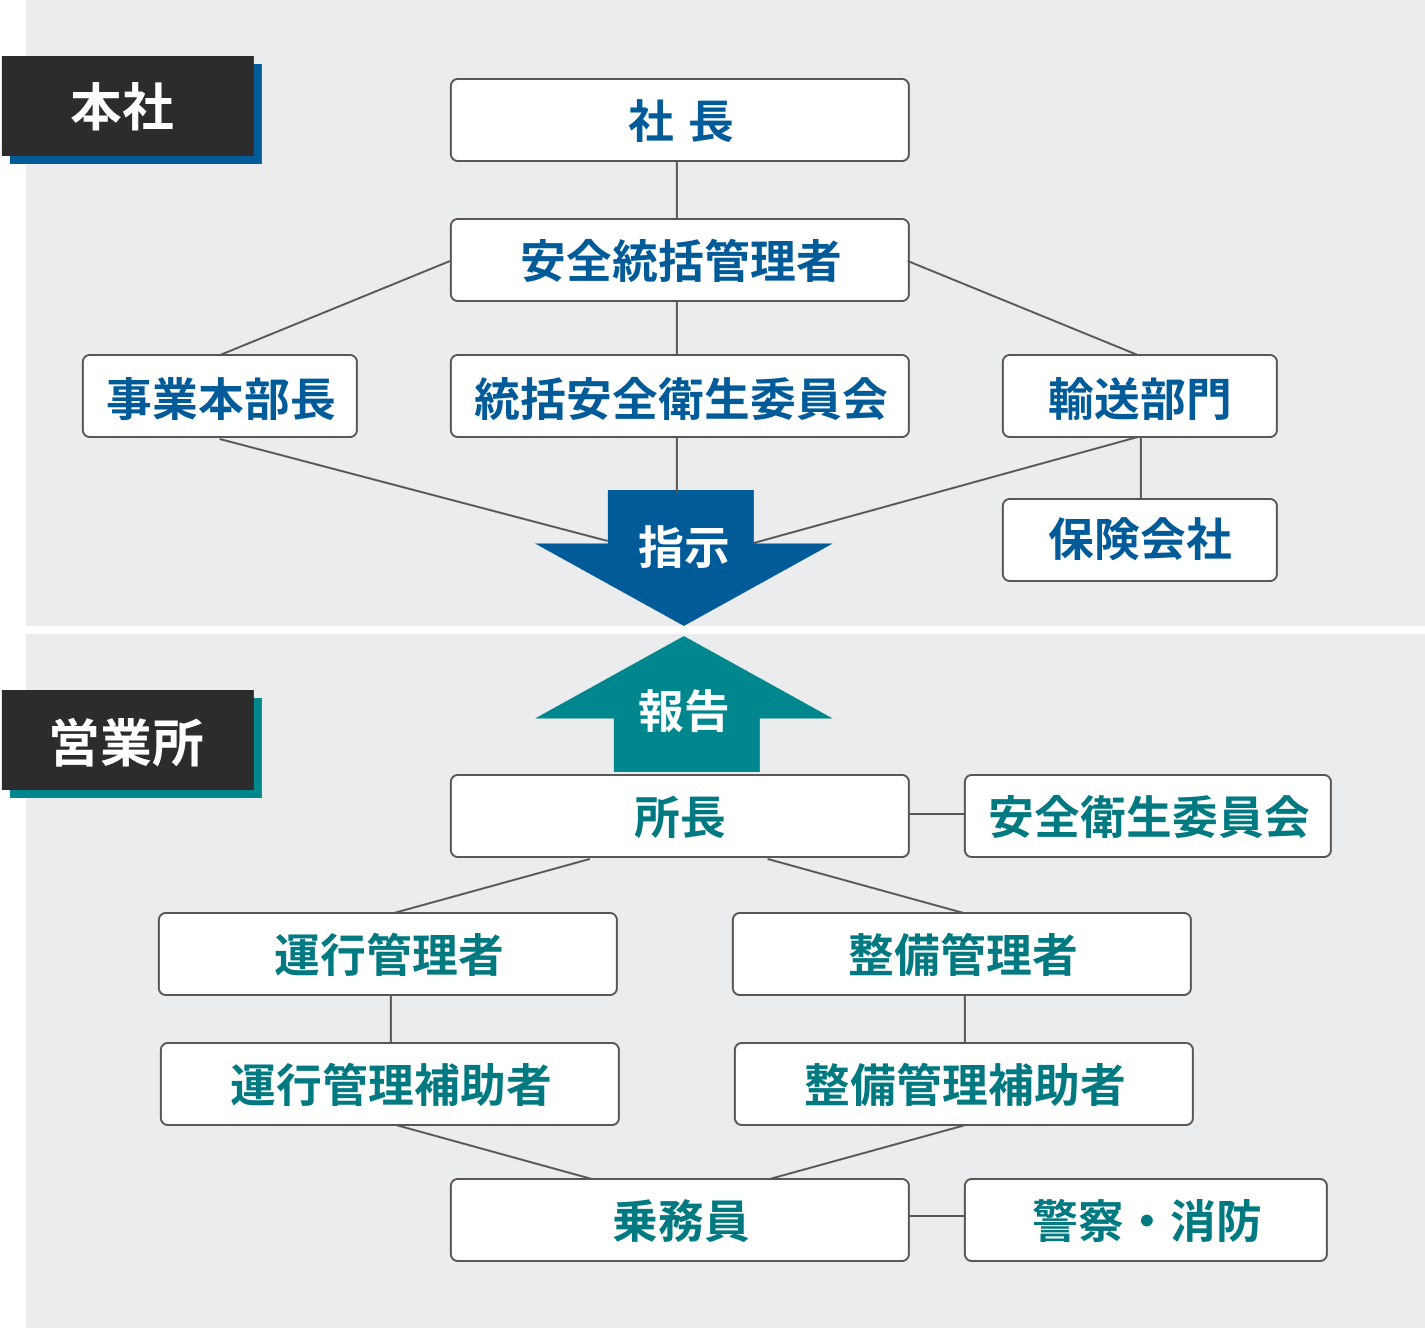 組織体制の図。本社と営業所の関係を示す